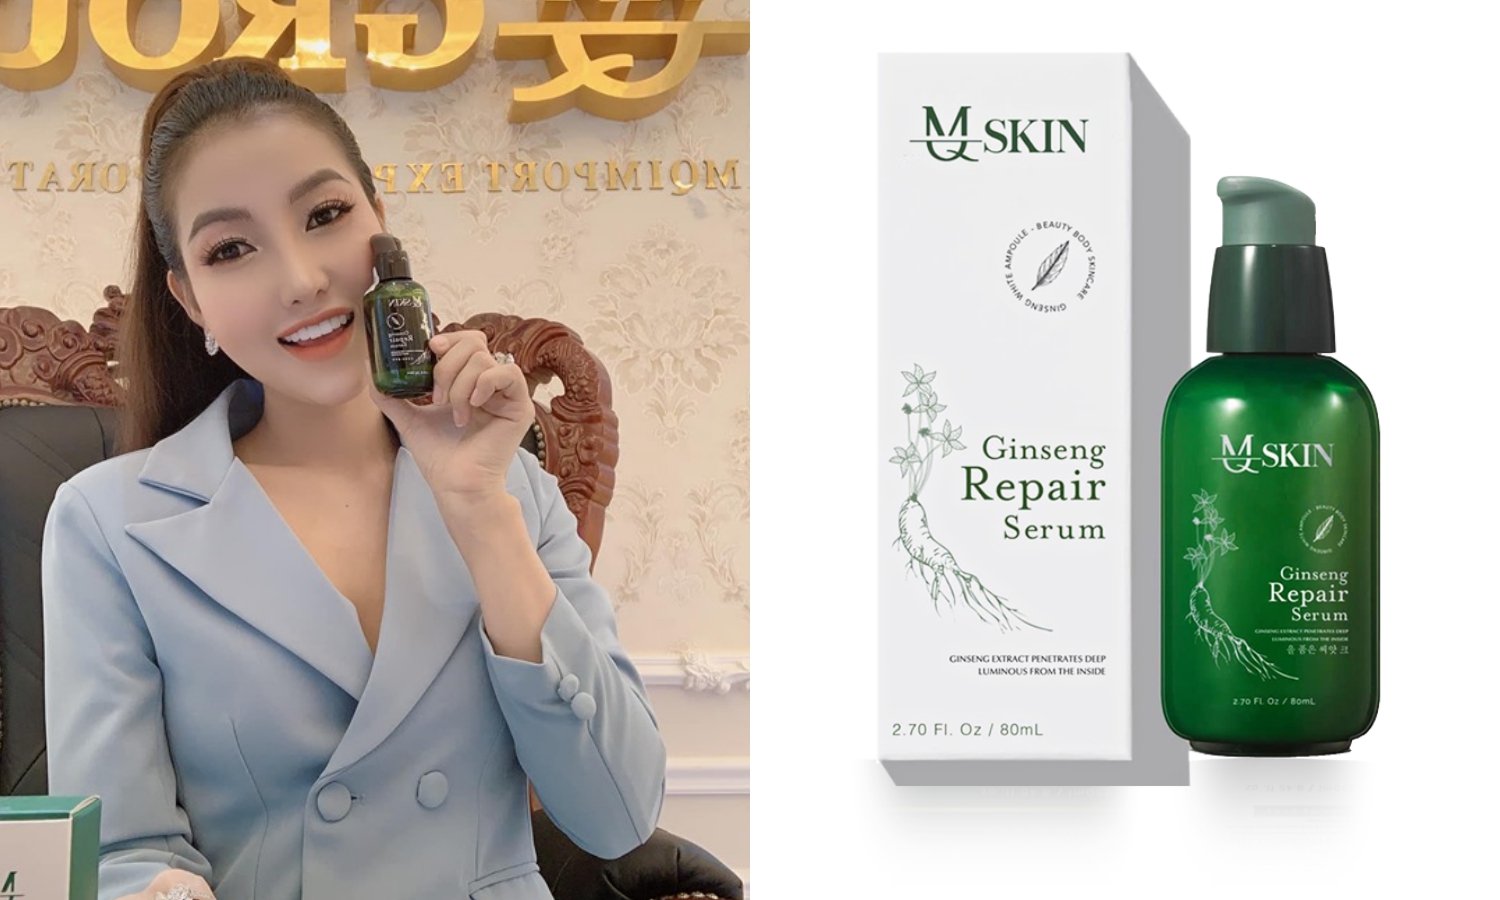 Tập đoàn MQ Skin đã hợp tác với Hàn Quốc nhập khẩu sản phẩm